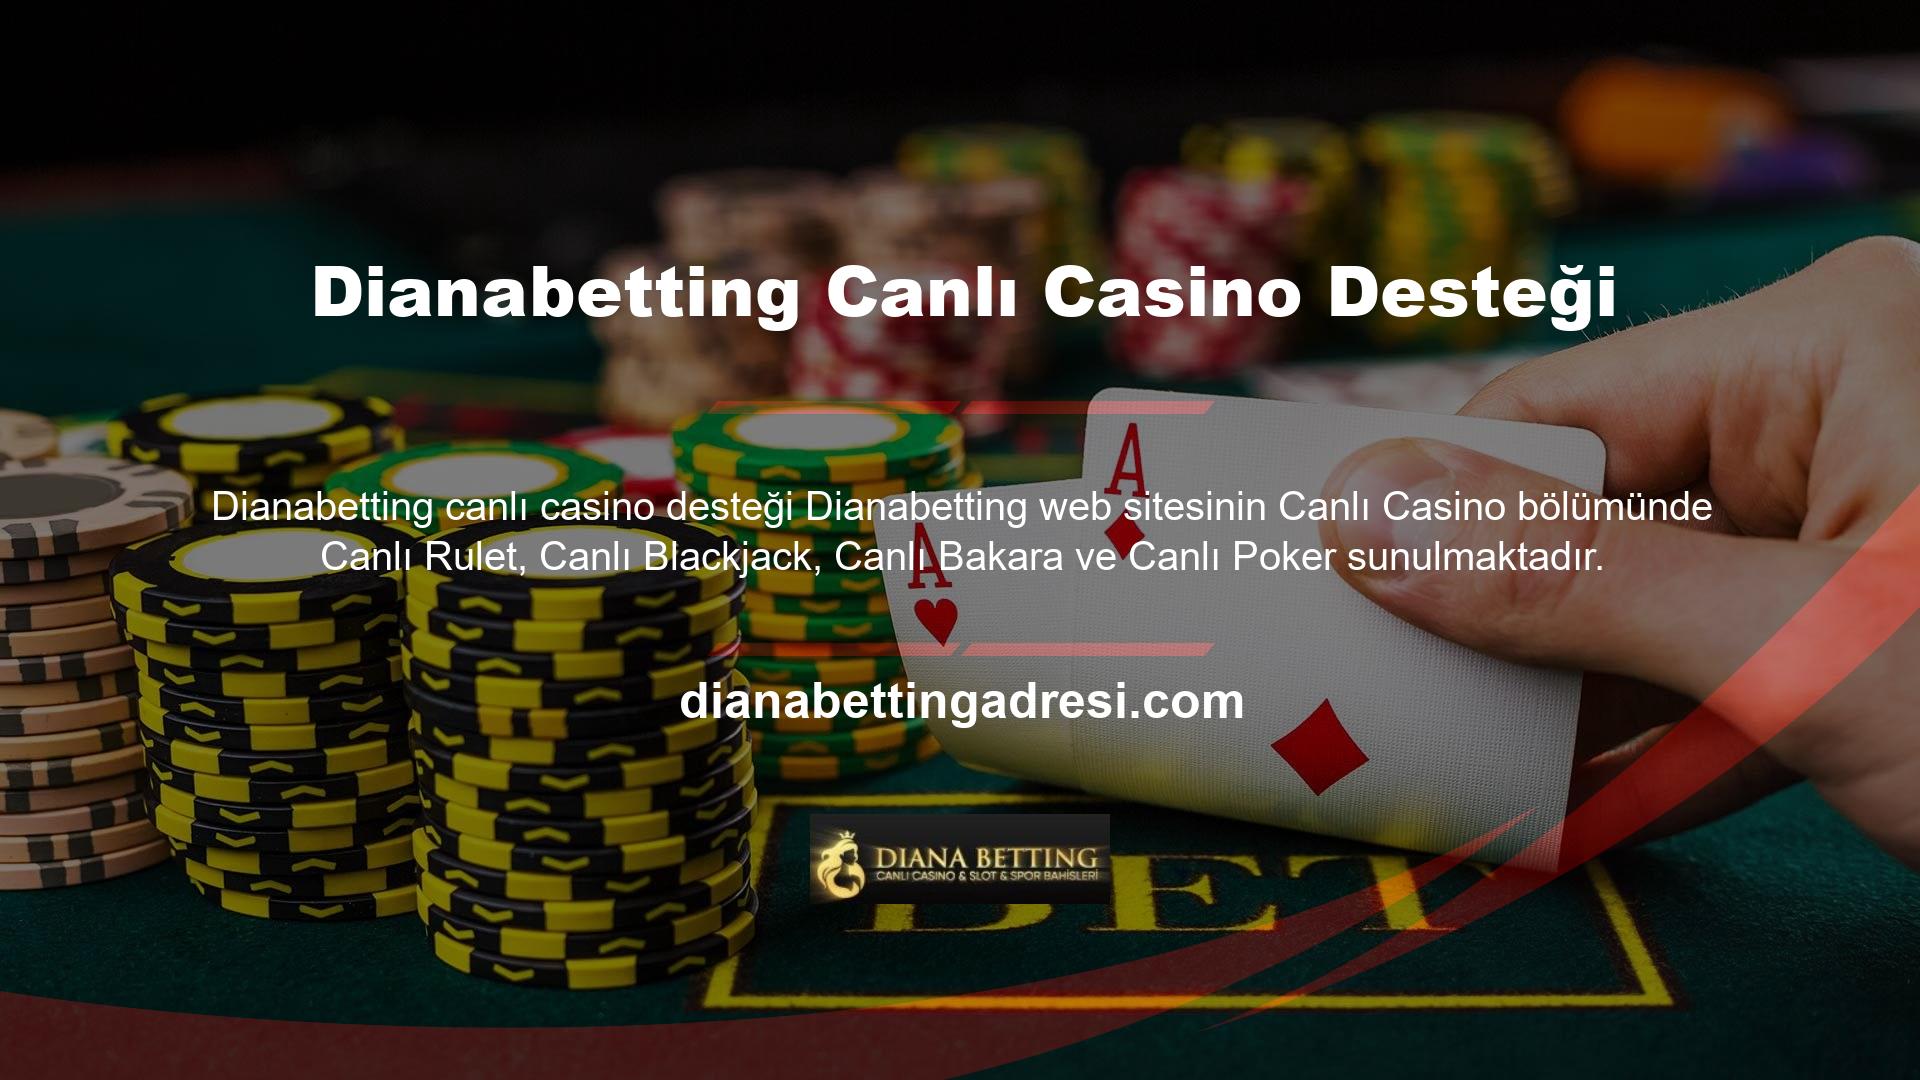 Dianabetting canlı casino destekli bu alternatifleri aynı zamanda sizlere eğlenirken ve eğlenirken para kazanma fırsatı da sunuyor